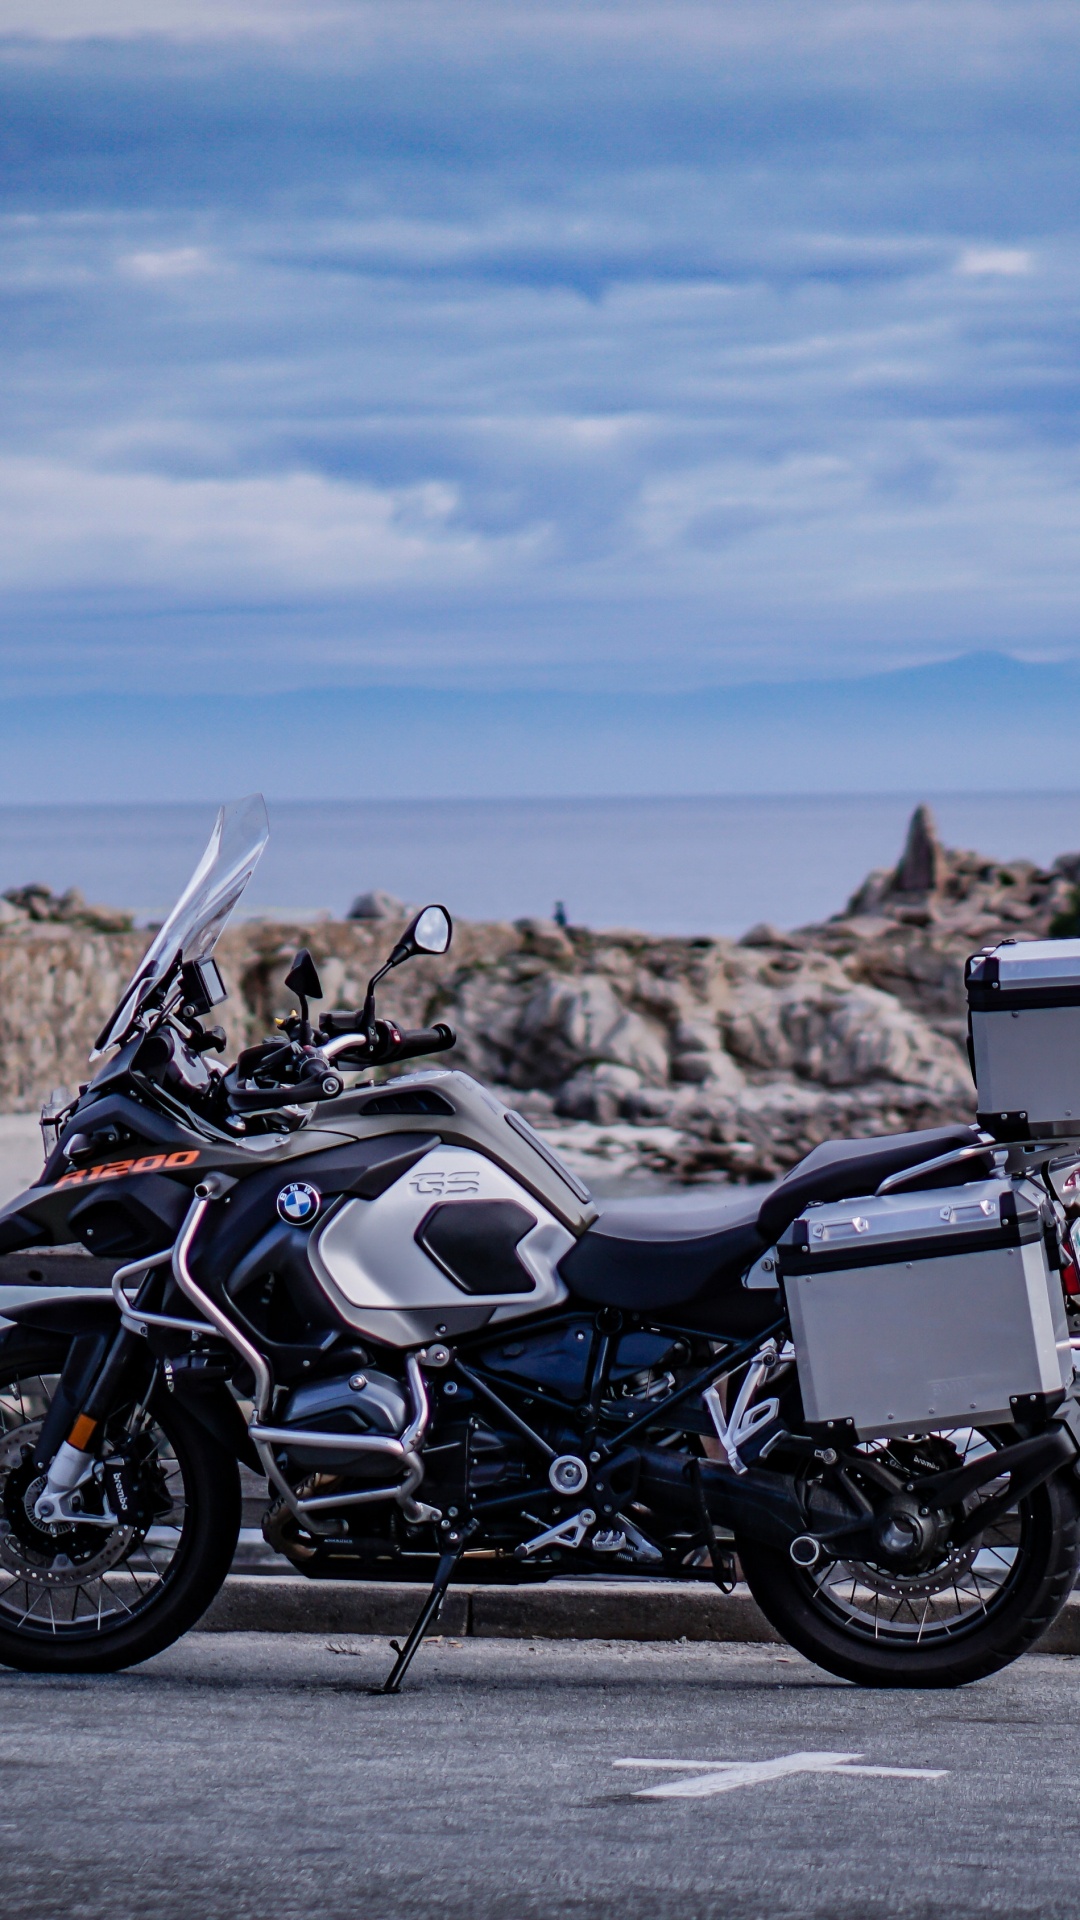 Motocicleta Negra y Plateada Estacionada en un Muelle de Madera Marrón Durante el Día. Wallpaper in 1080x1920 Resolution